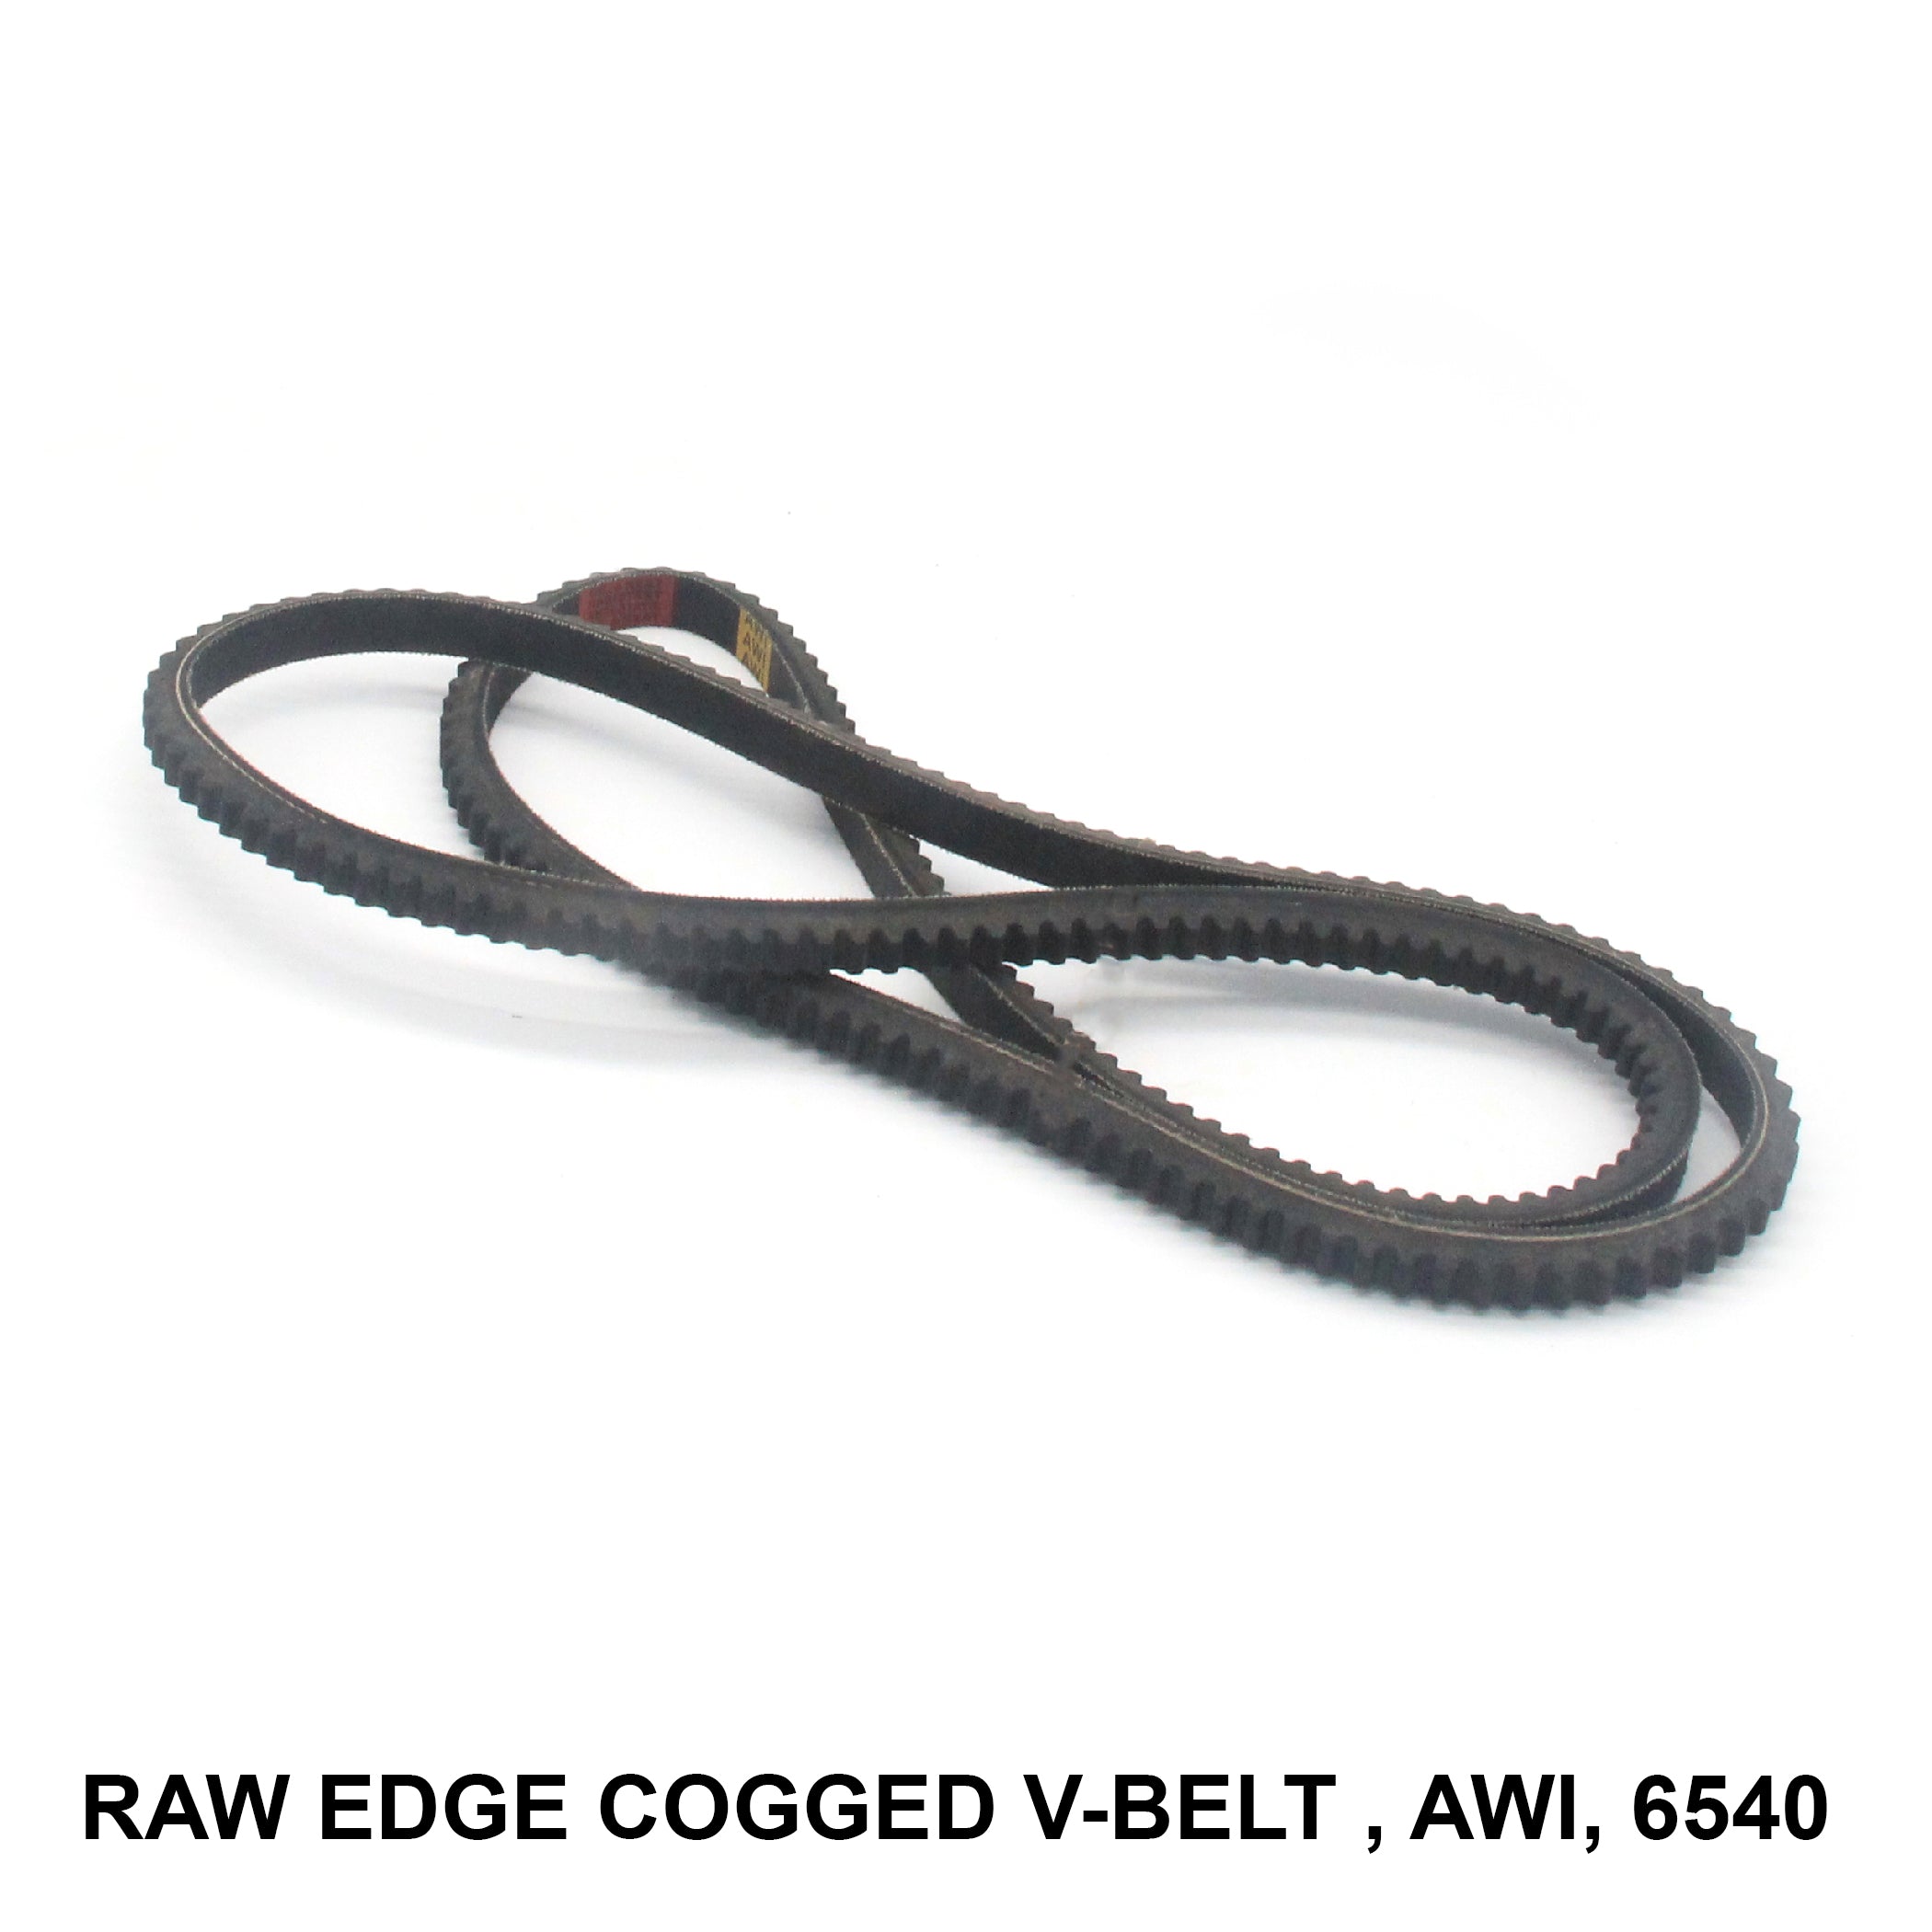 Raw Edge Cogged V-belt - RECMF-6540 (006722) by AWI